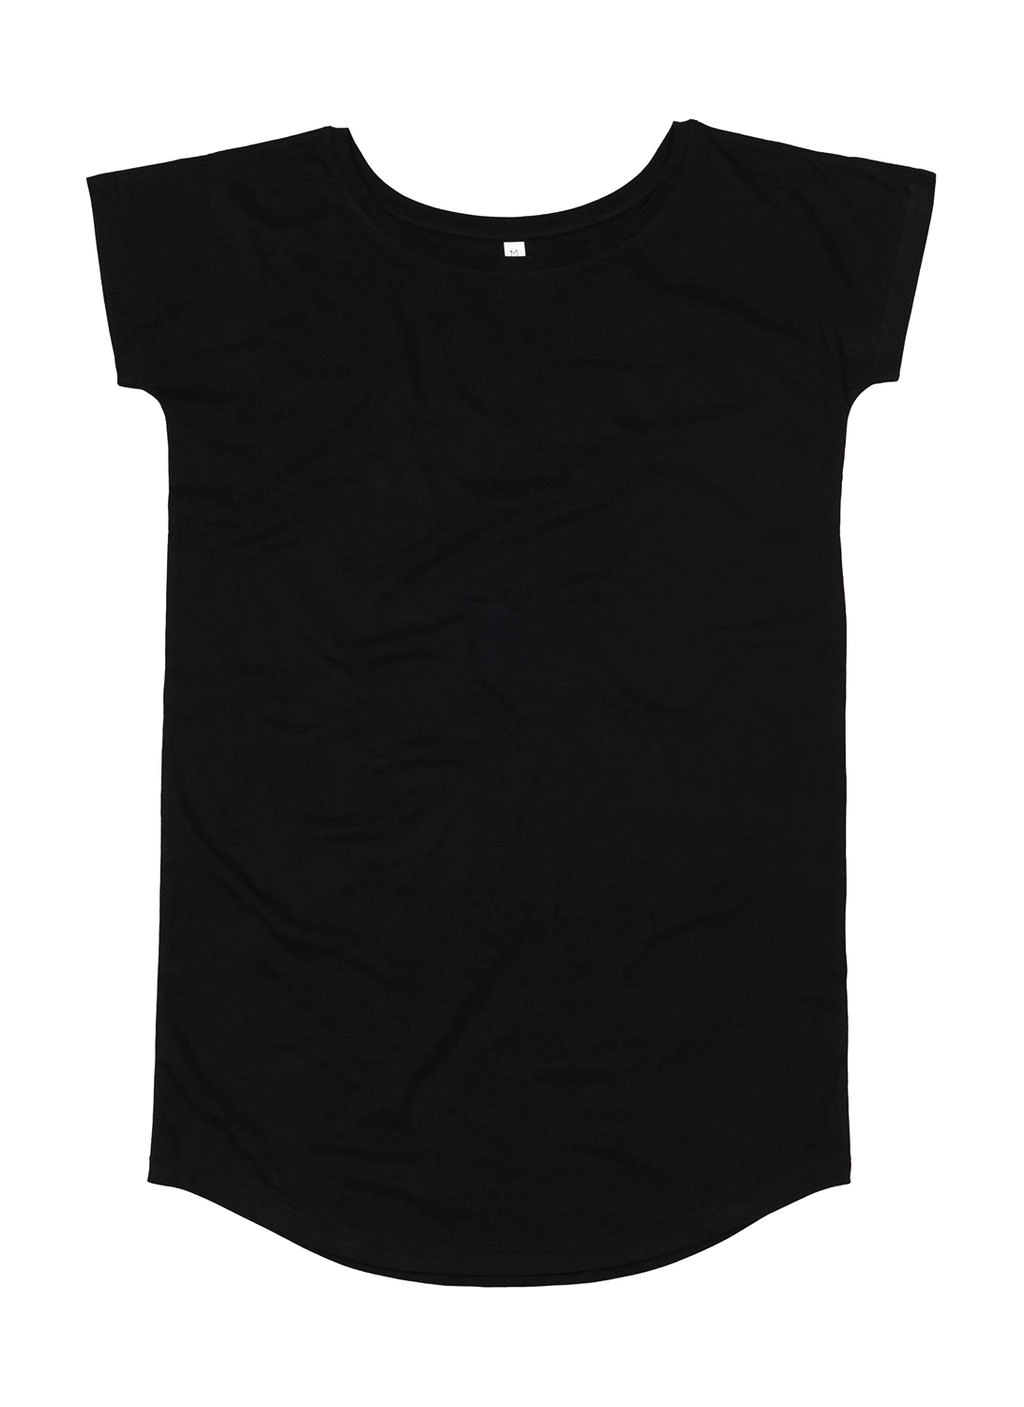 Loose Fit T Dress zum Besticken und Bedrucken in der Farbe Black mit Ihren Logo, Schriftzug oder Motiv.